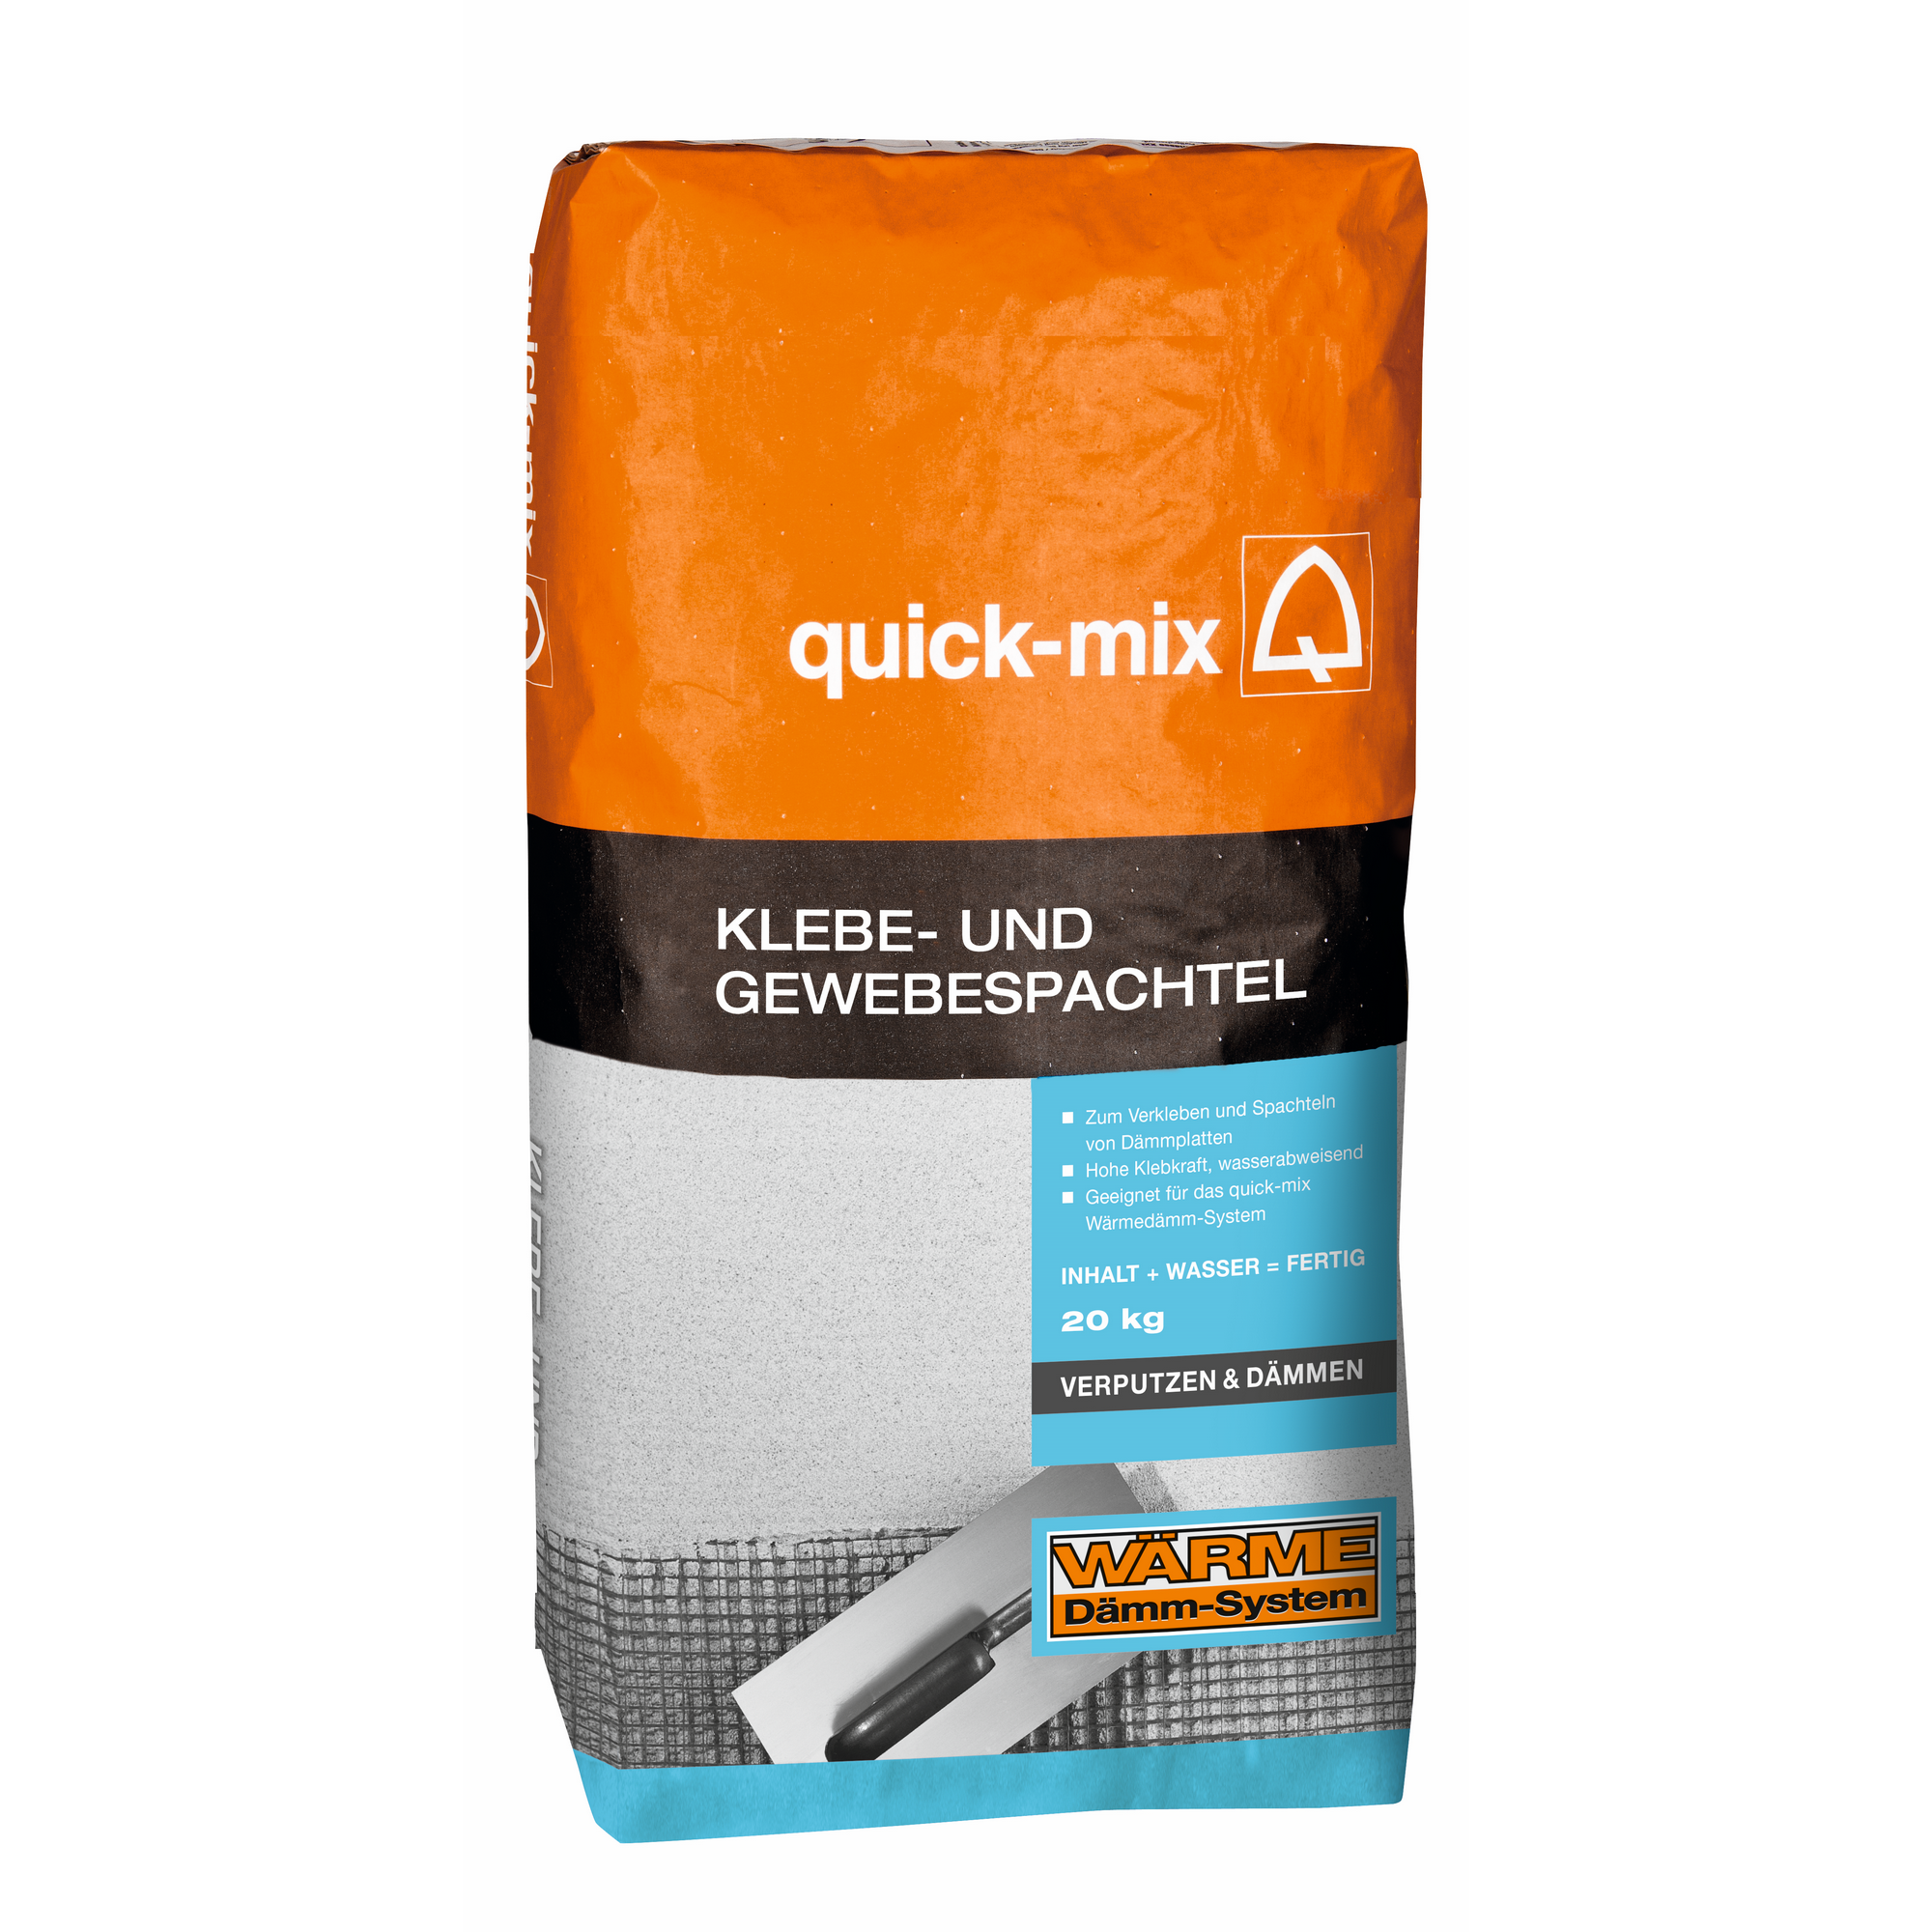 Klebe- und Gewebespachtel 20 kg + product picture